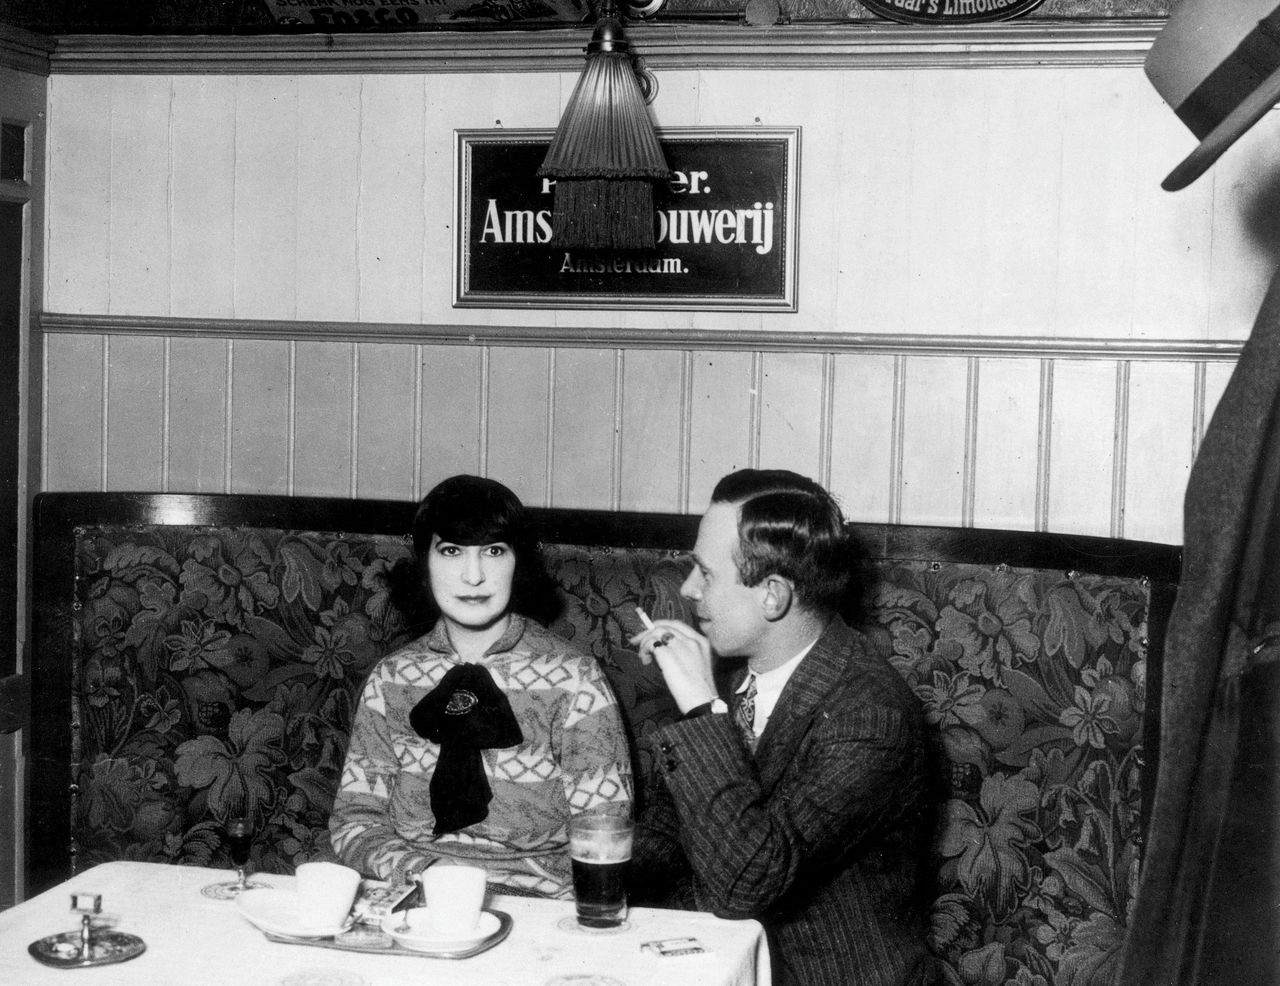 Schrijfster Mary Dorna, auteur van onder meer Laten we vader eruit gooien, in een café naast een rokende man, circa 1930.